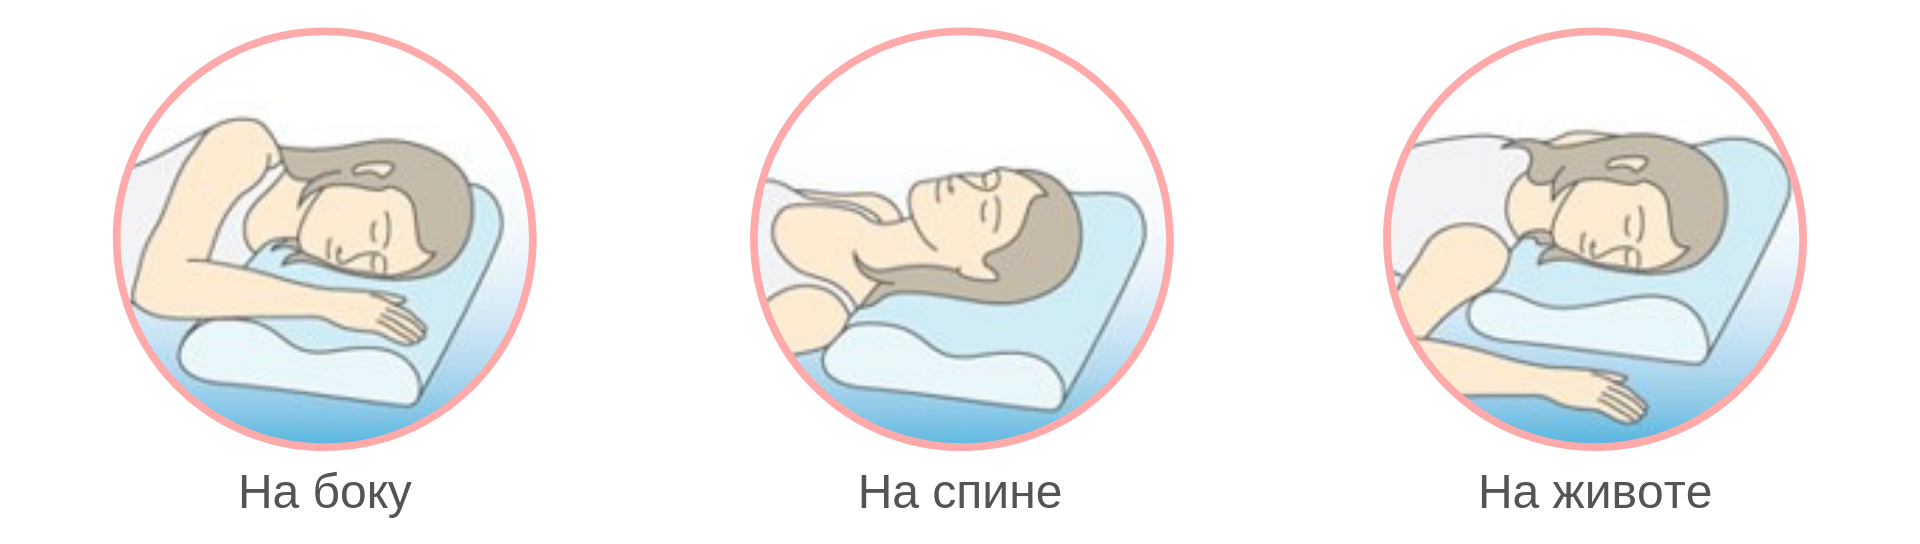 Ортопедическая подушка иконка. Как правильно спать на ортопедической подушке. Ортопедическая подушка инфографика. Как правильно чпать на ортопедическлй пожцшке.